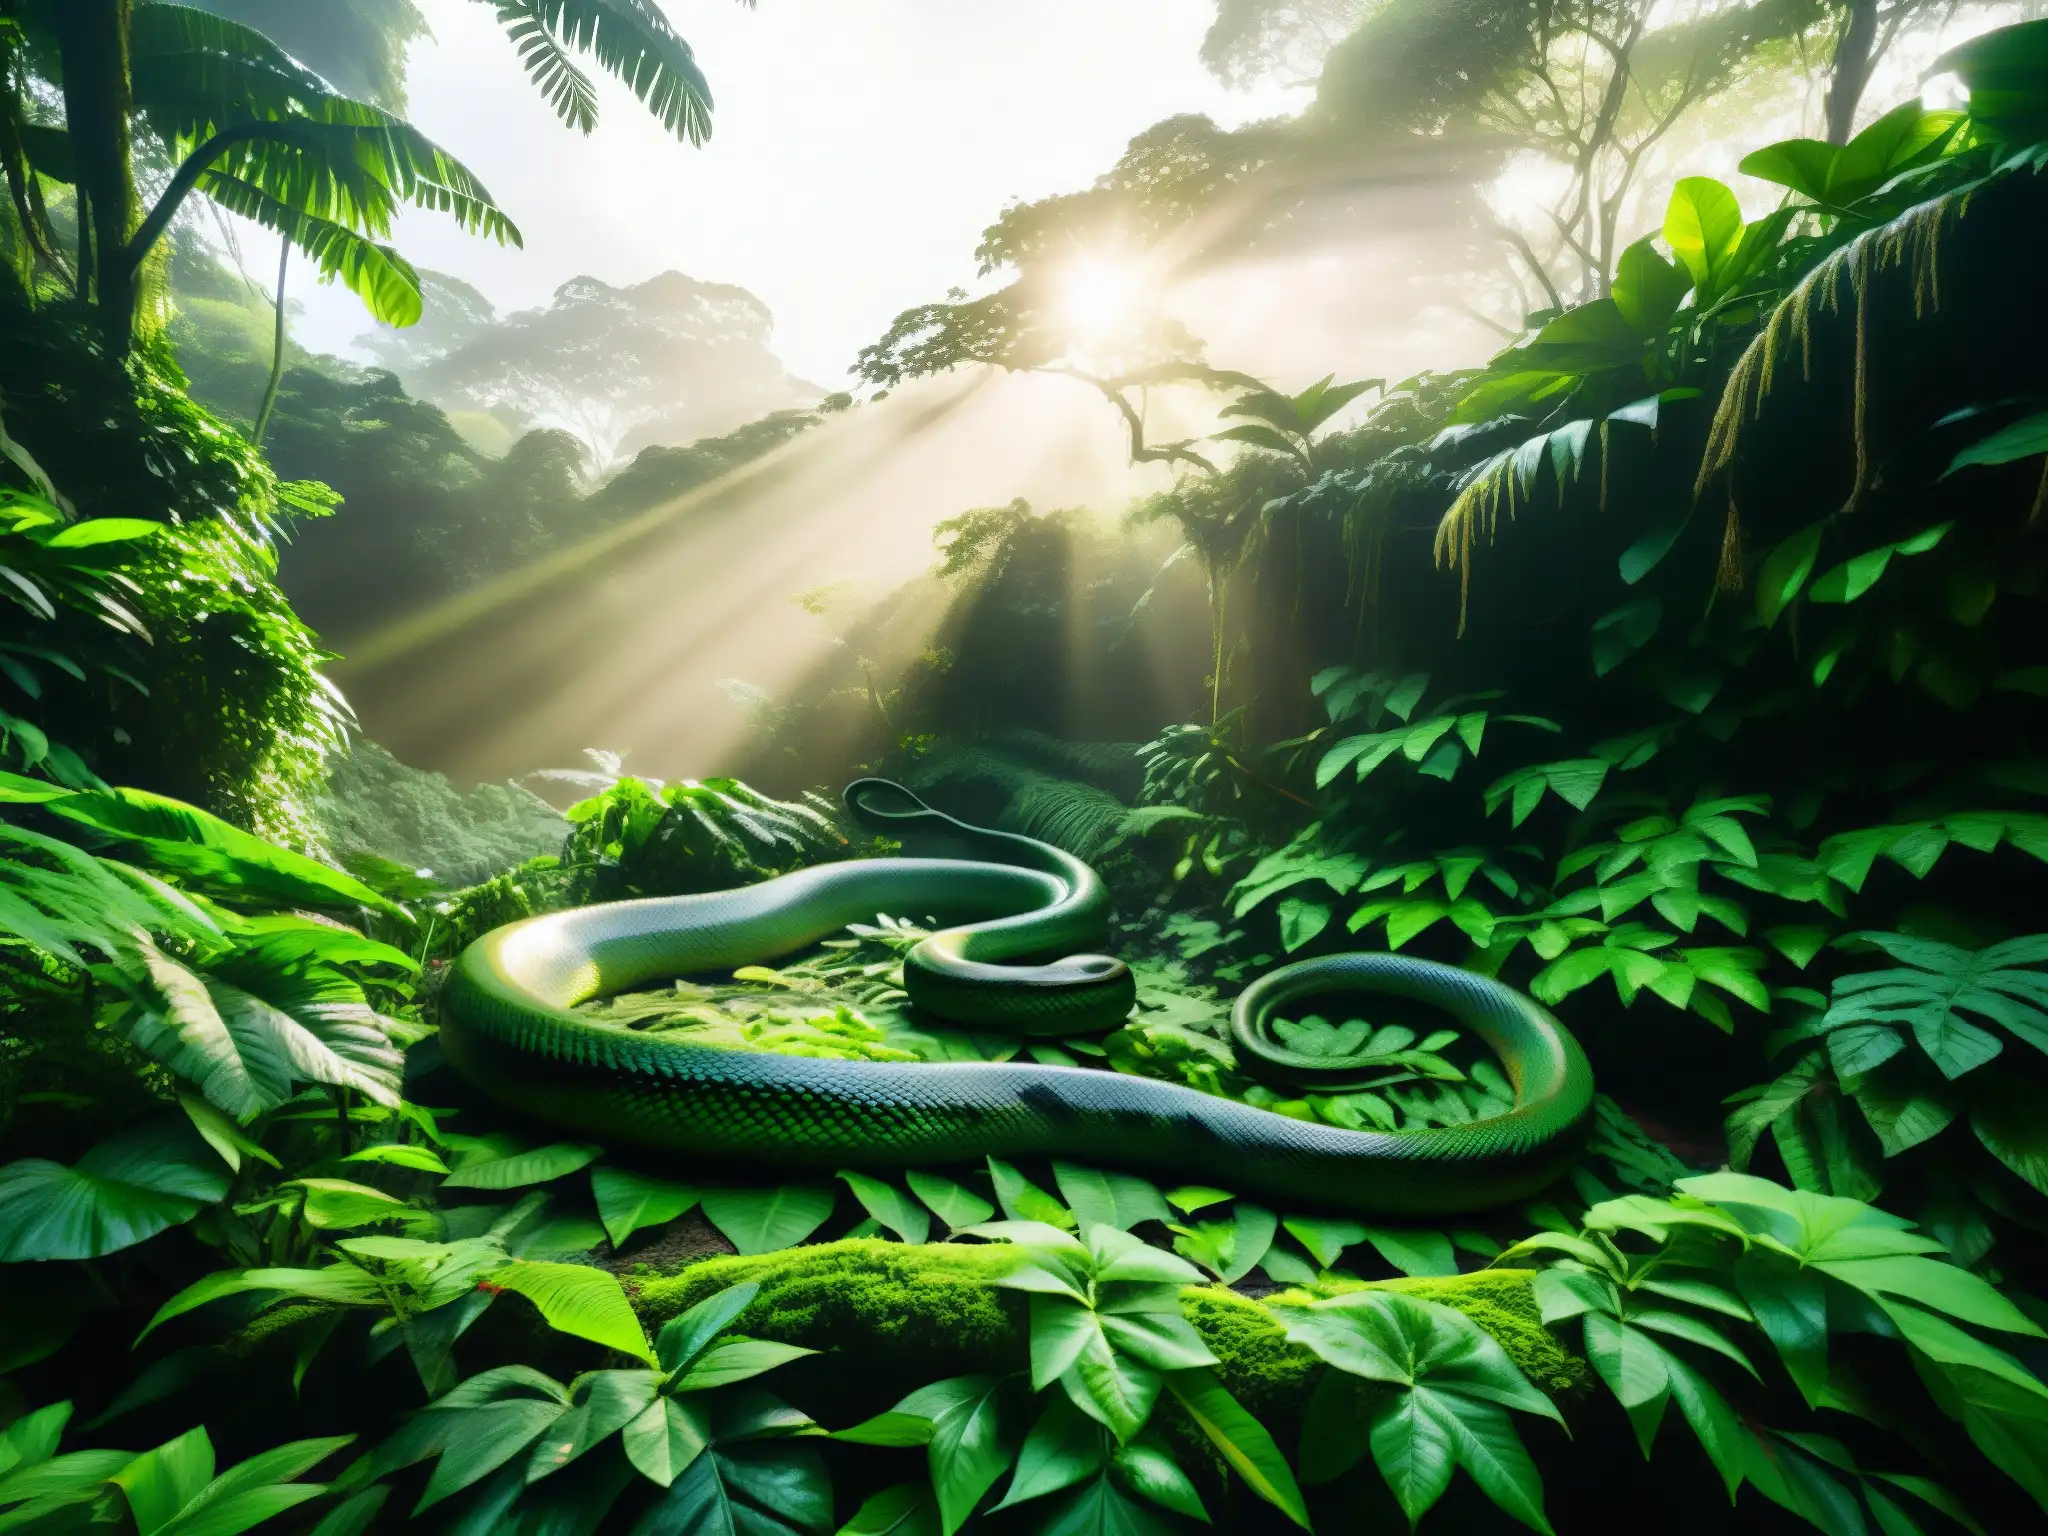 Imagen de la serpiente gigante Yacumama, oculta en la exuberante selva del Amazonas, evocando asombro y temor